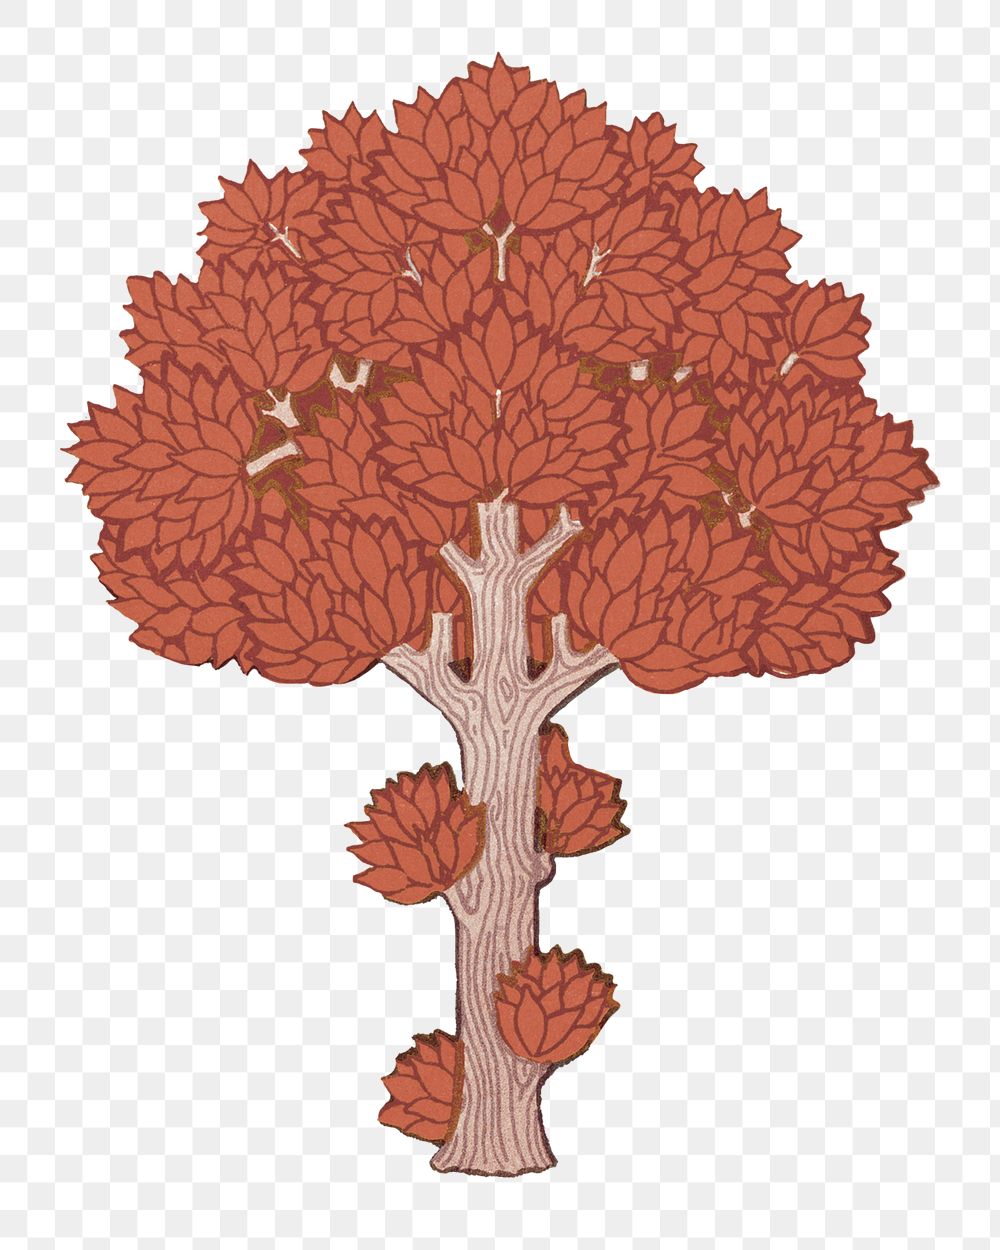 Autumn tree png sticker, vintage botanical illustration, transparent background